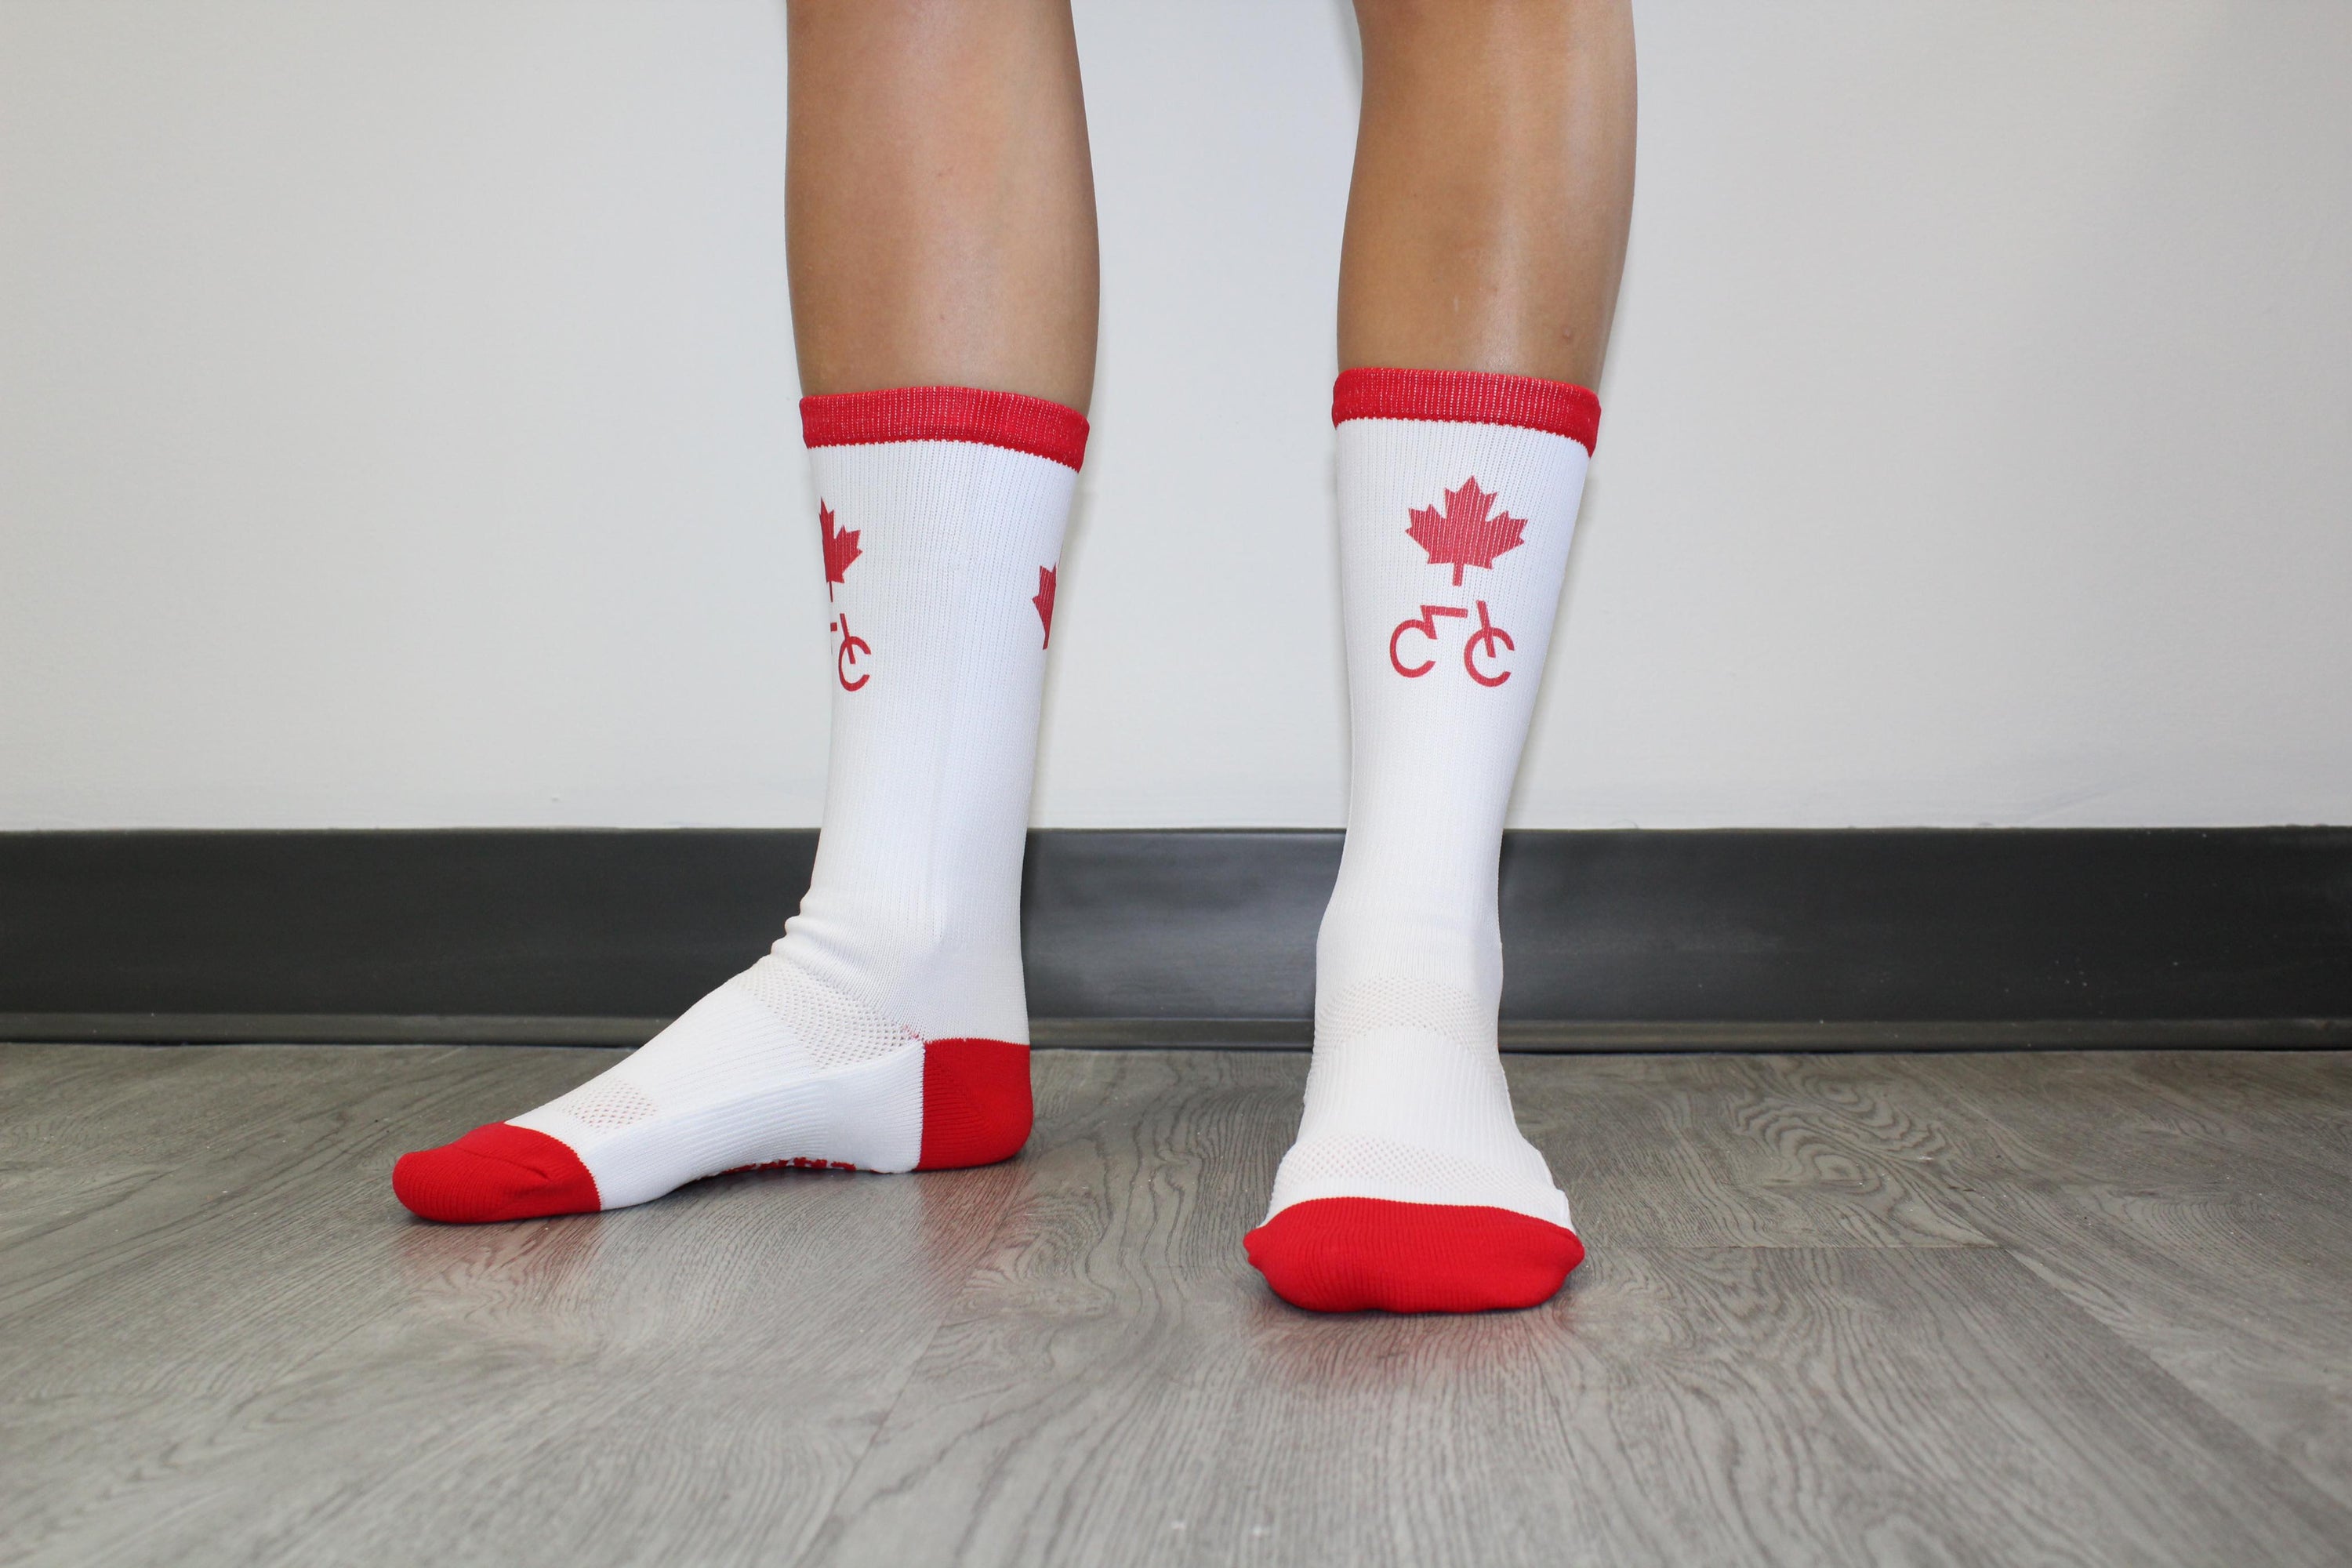 Endur Cycling Canada Socks